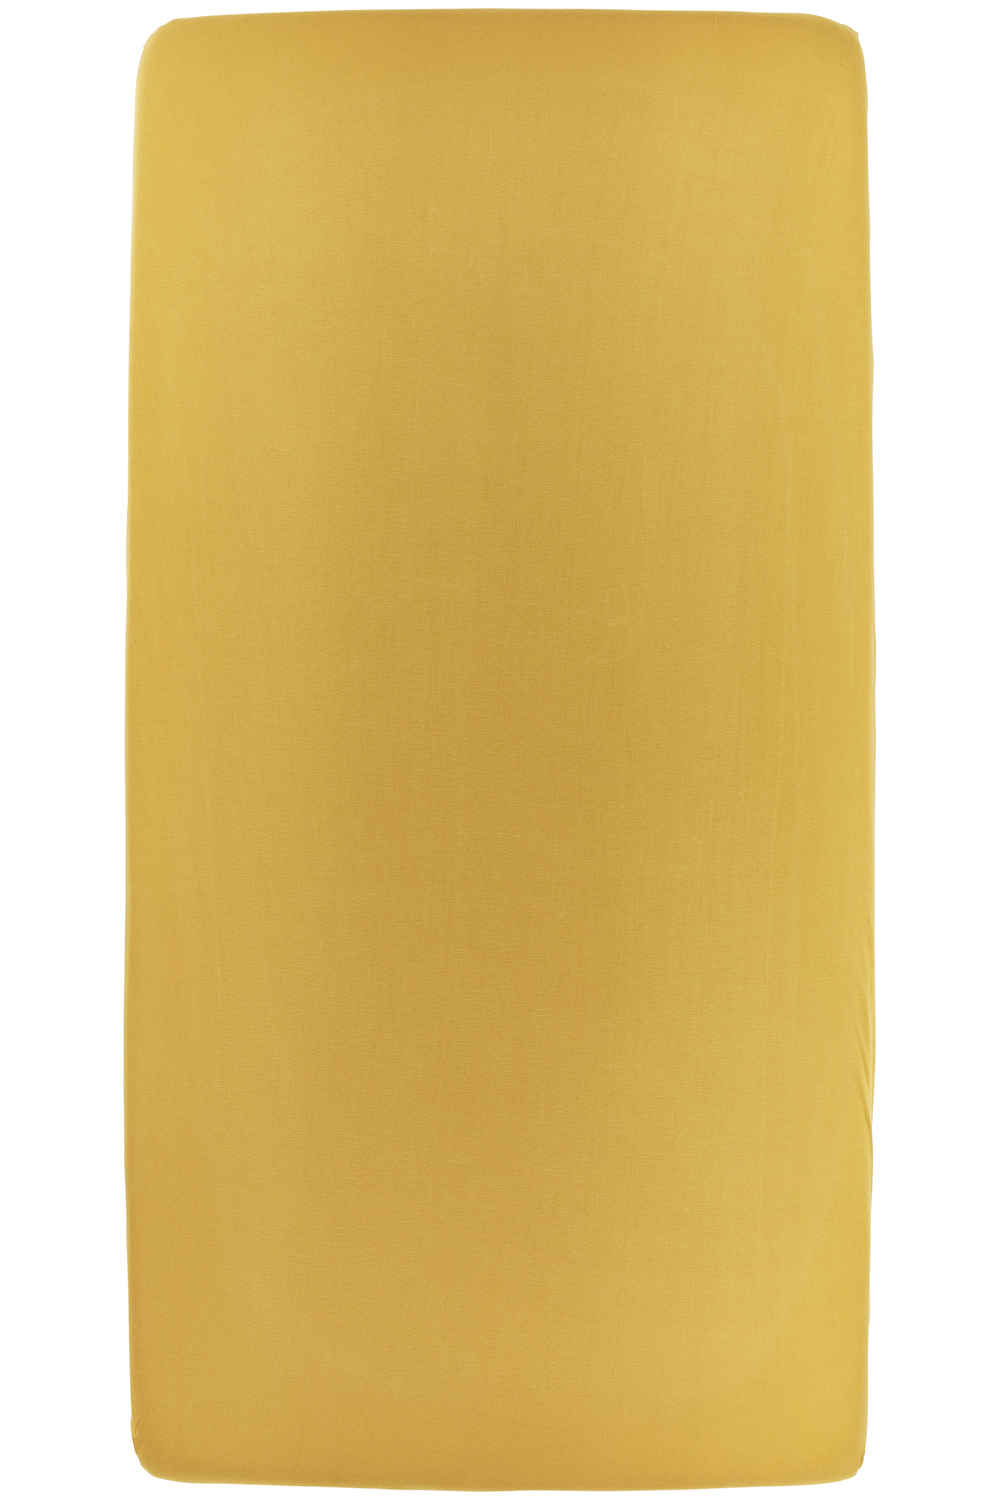 Hoeslaken eenpersoonsbed Uni - honey gold - 90x200cm